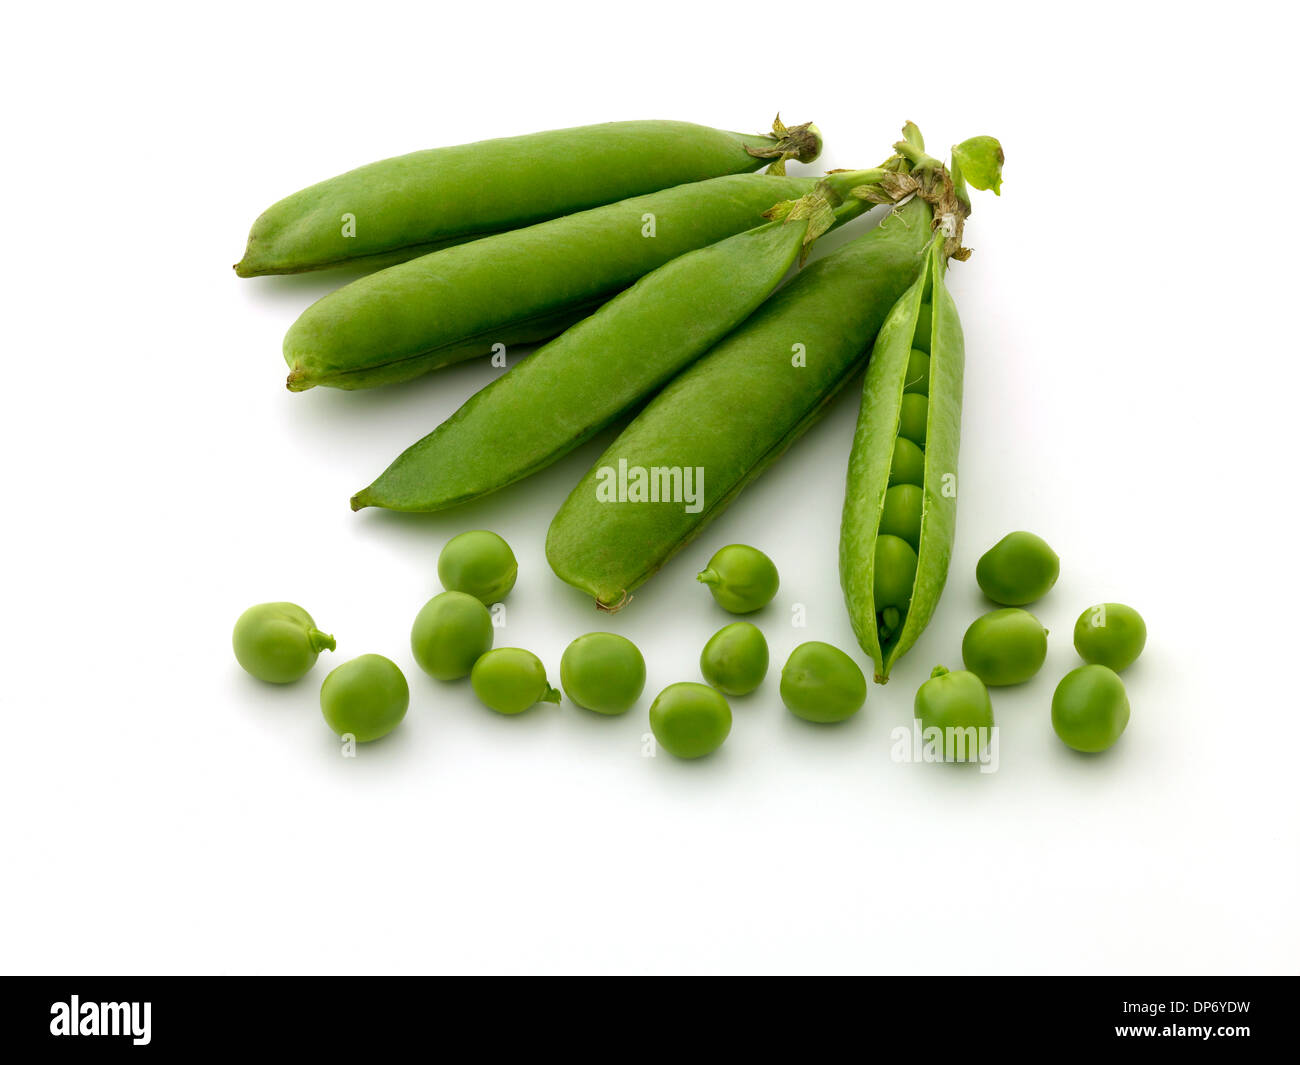 garden peas Stock Photo